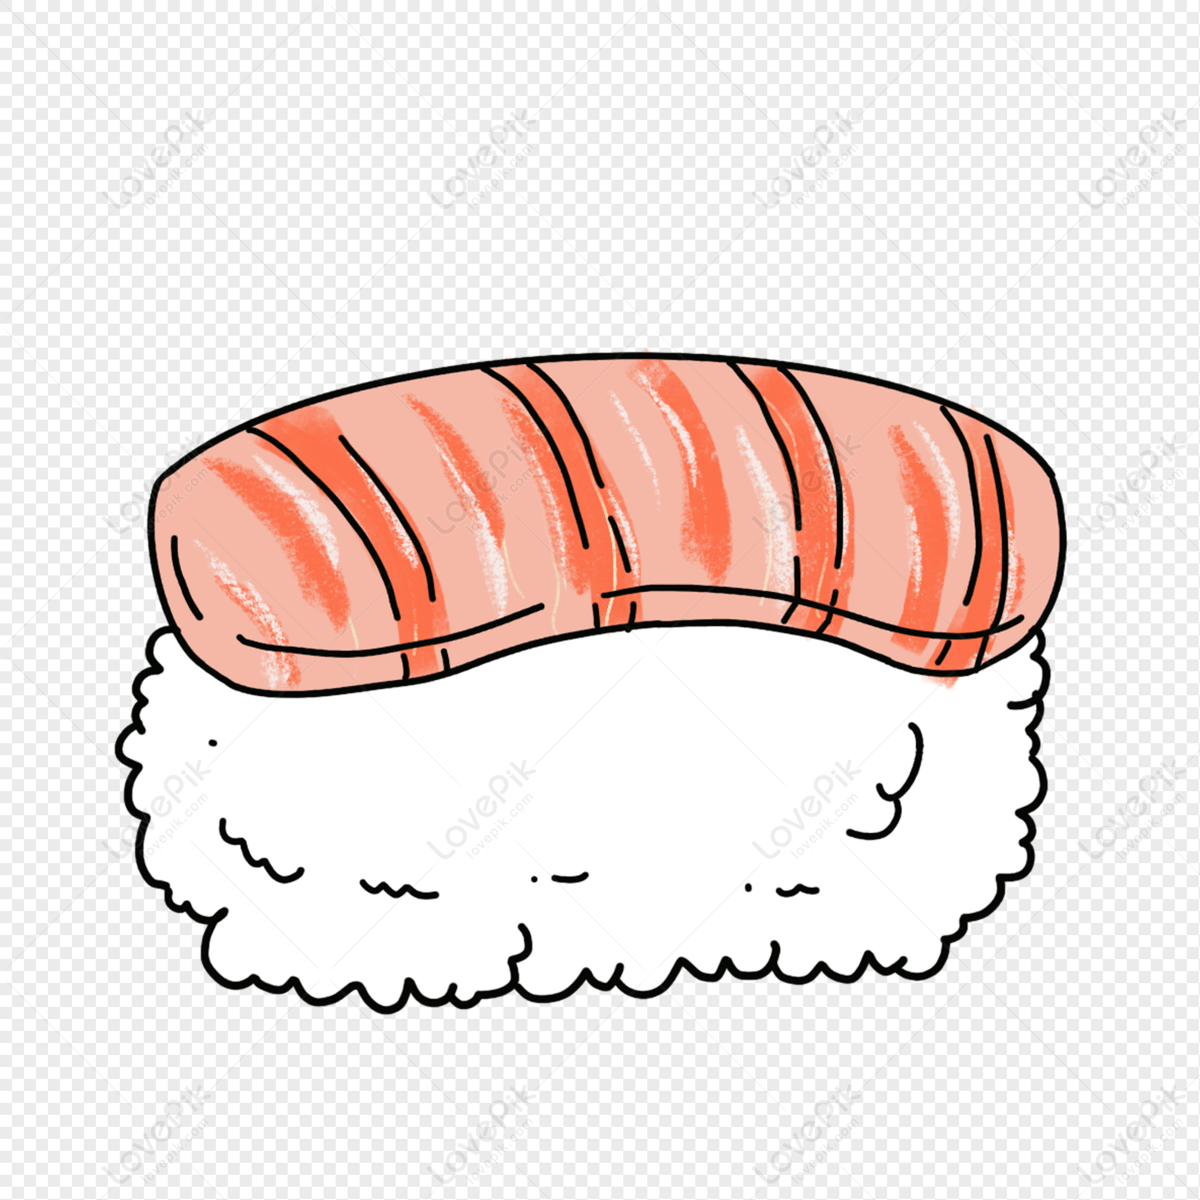 Hình ảnh Vẽ Tay Hoạt Hình Sushi PNG Miễn Phí Tải Về - Lovepik